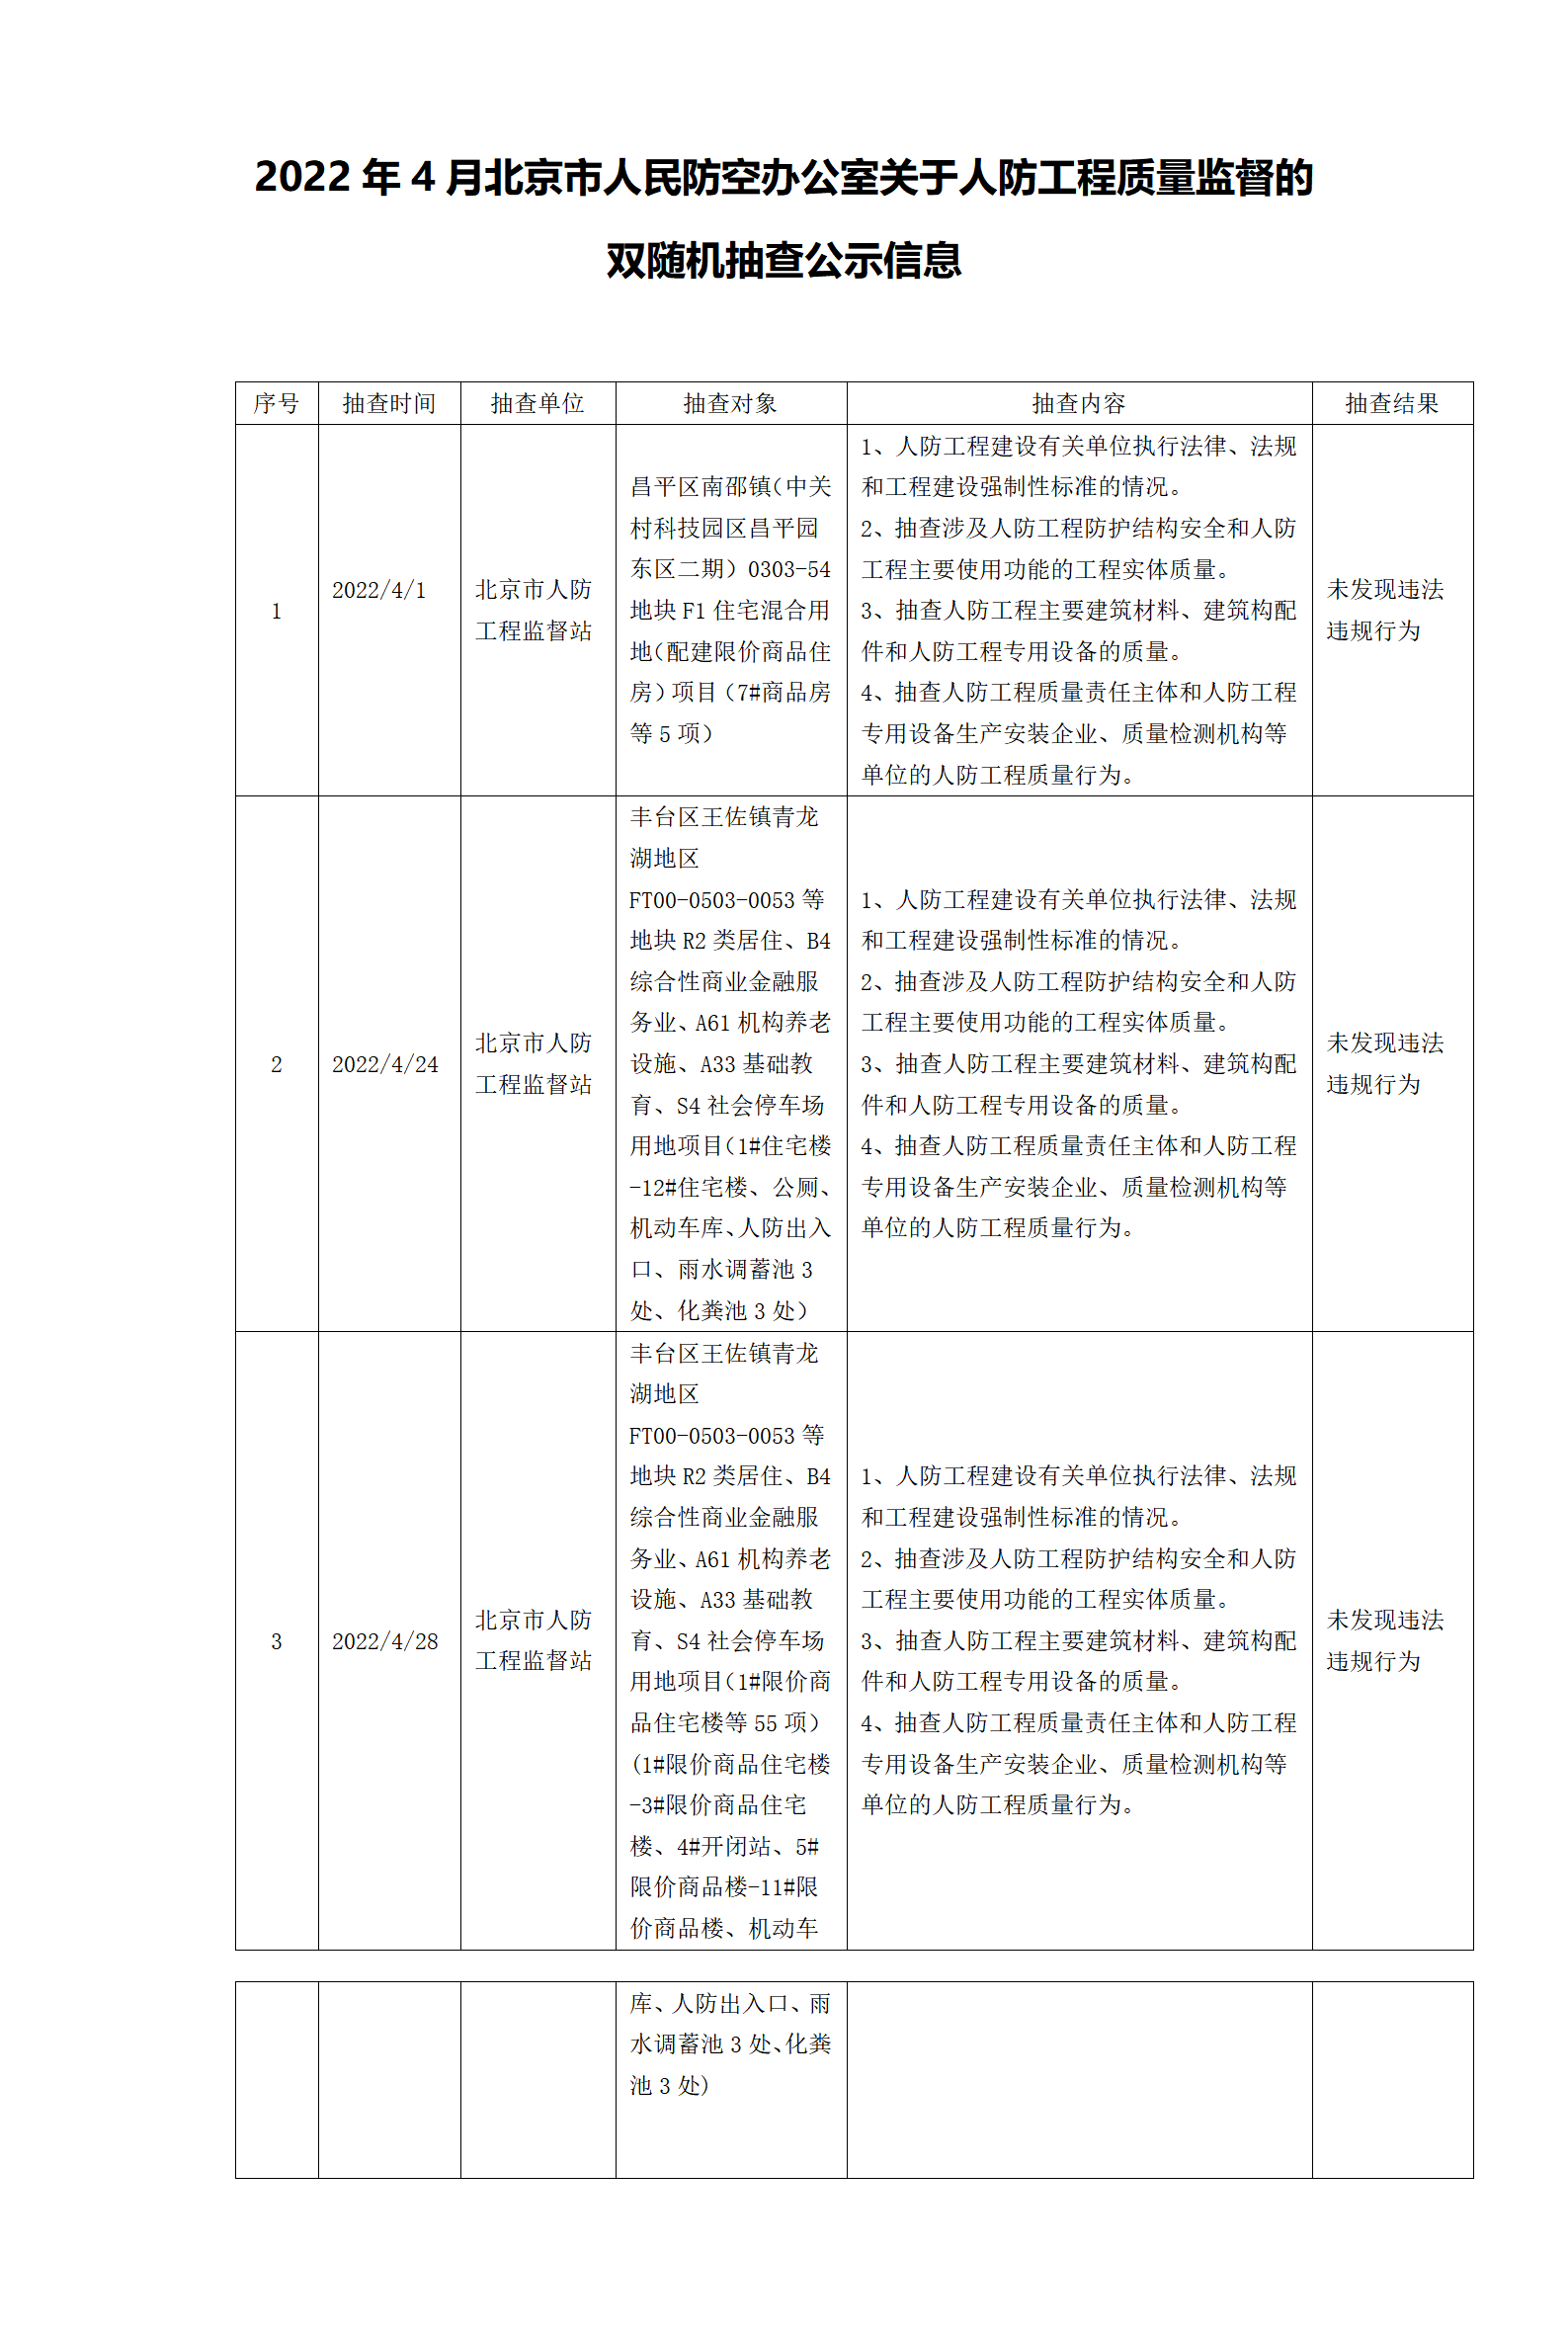 5.6 2022年4月人防工程质量监督的双随机（3项）(2)(1)_01.png